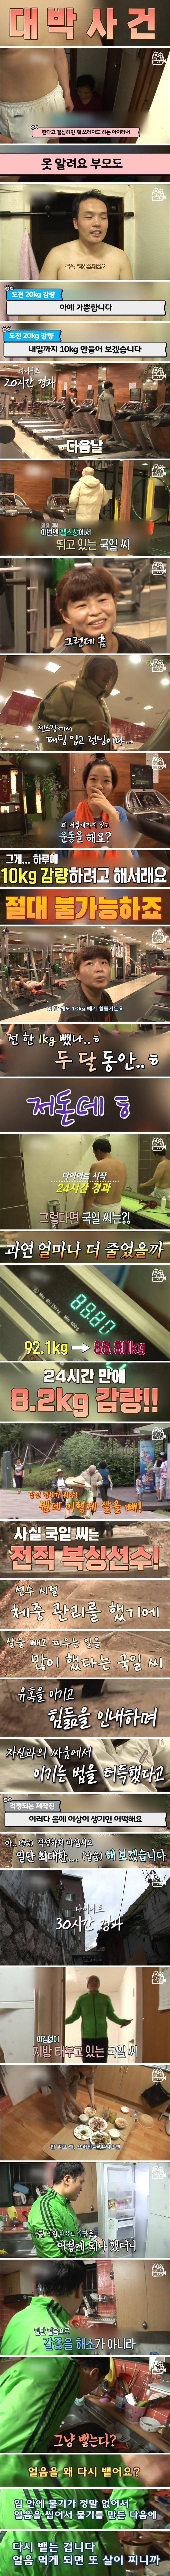 죽음의 다이어트. 2일 만에 20kg 빼기 (2).jpg